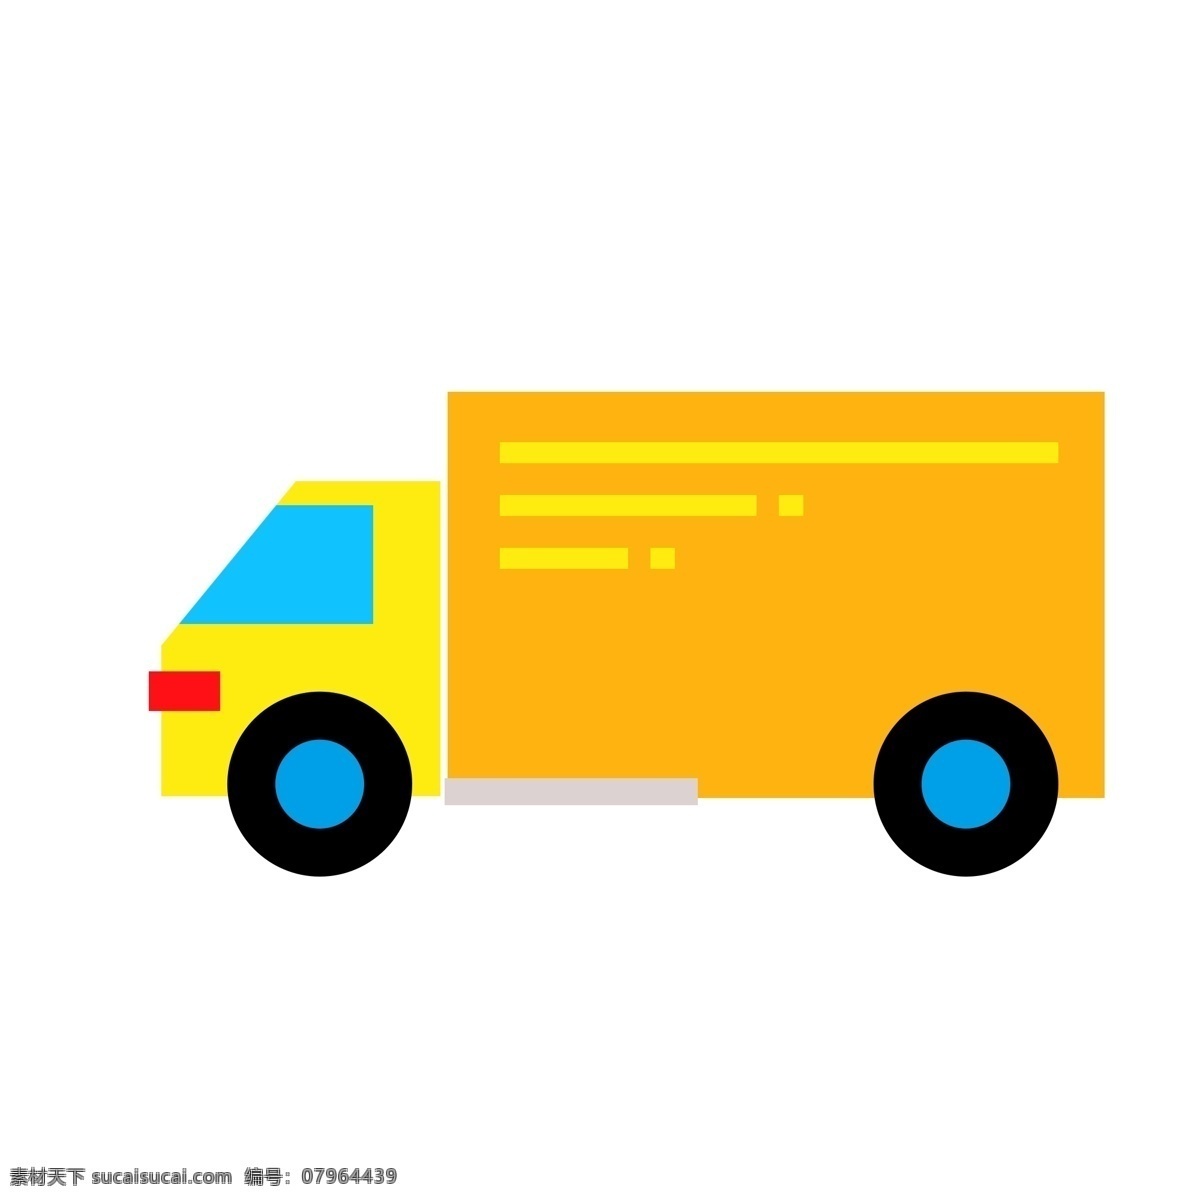 卡车元素 卡车 卡车素材 货运 货运车 运输 运输元素 运输素材 快递 快递元素 快递素材 黄色卡车 配送站 交通 交通元素 交通素材 行驶 驾驶 驾驶元素 驾驶素材 行车 元素设计 分层